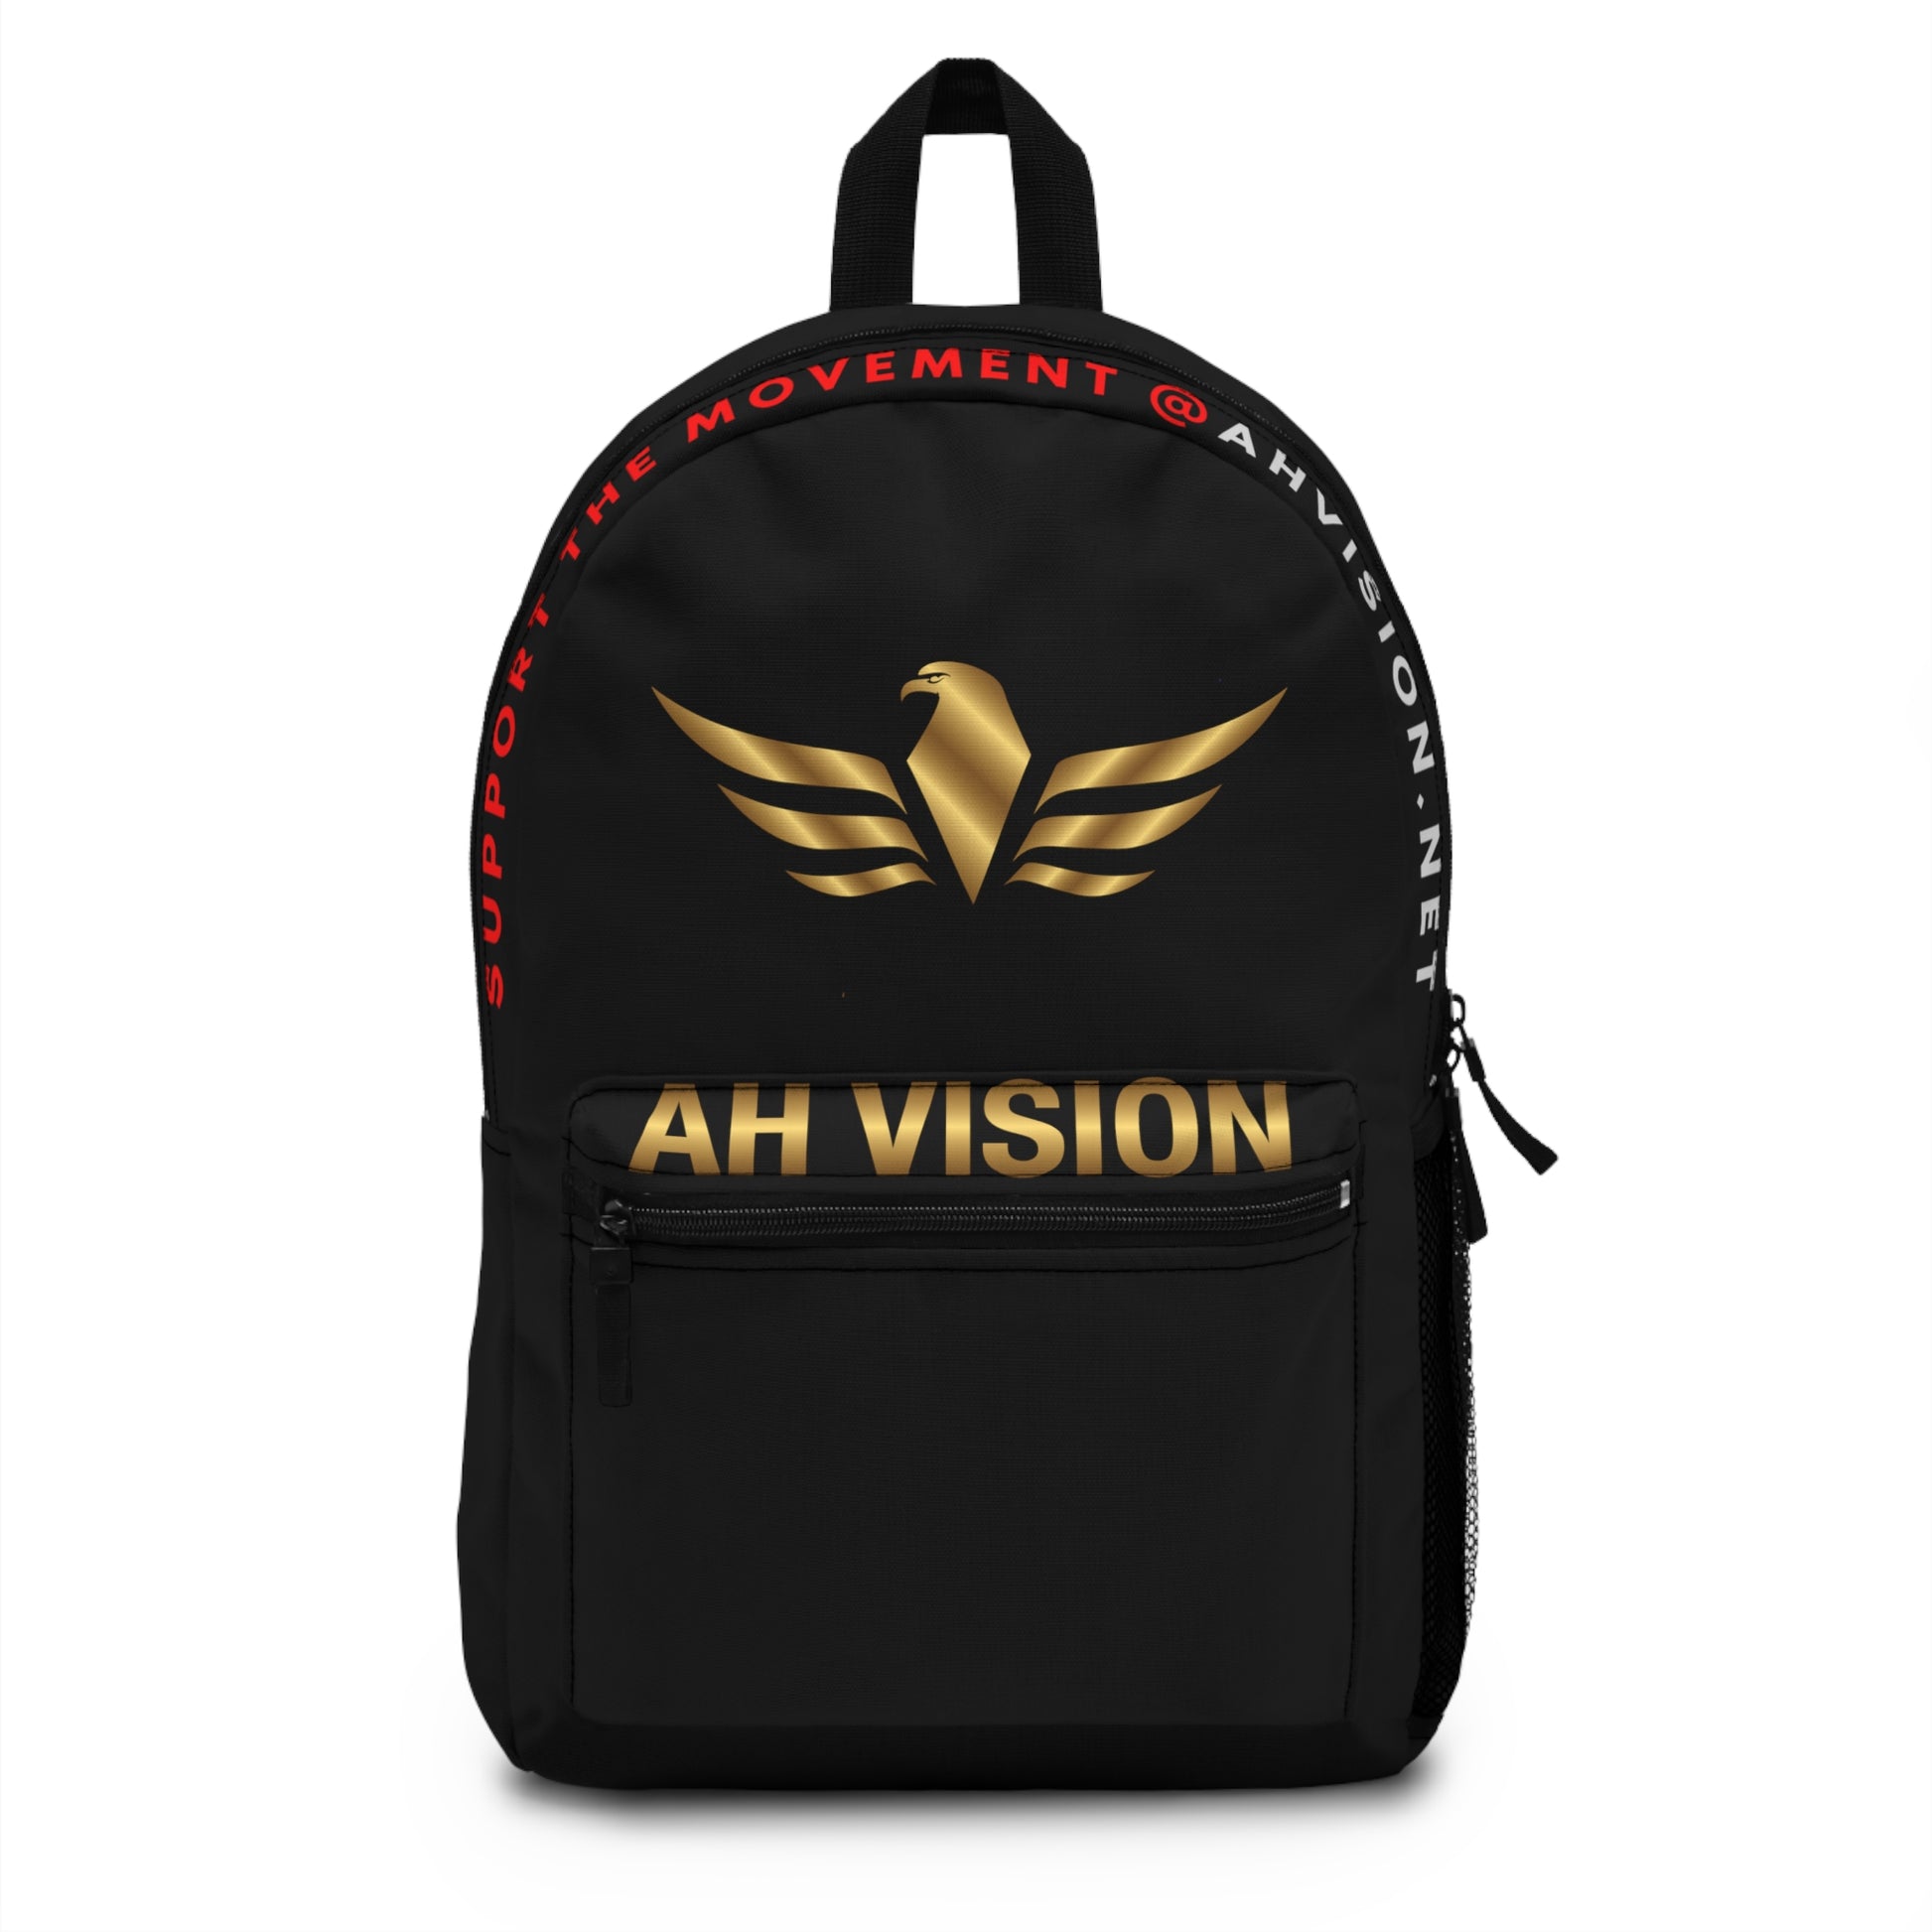 AH Vision Black Backpack - AH VISION